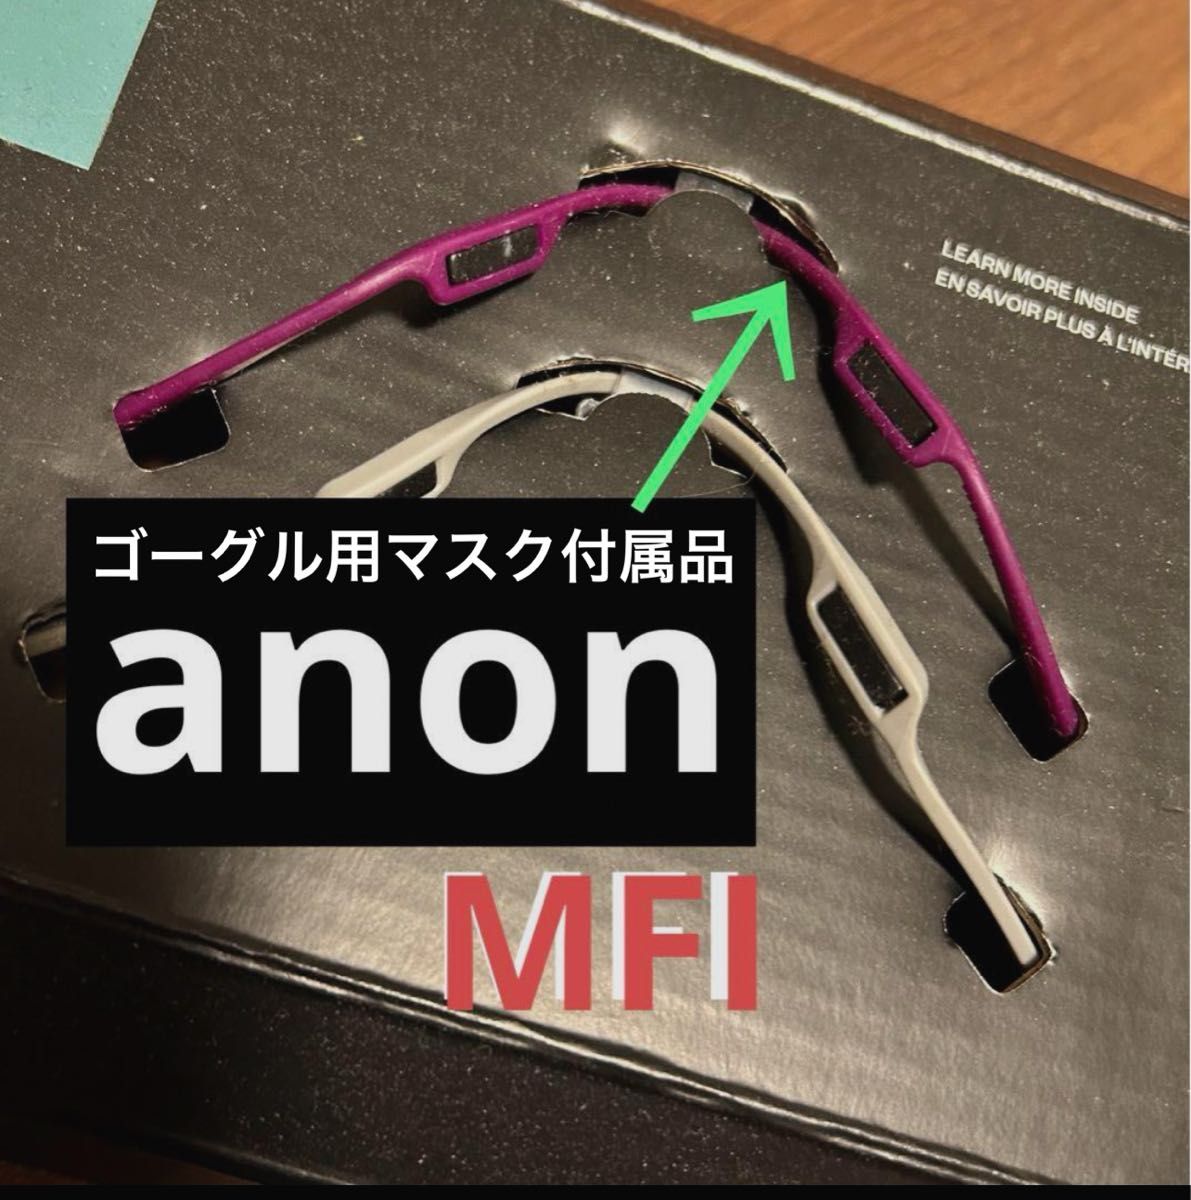 未使用 新品【anon】ゴーグル 装着型 フェイスマスク用 マグネット MFI